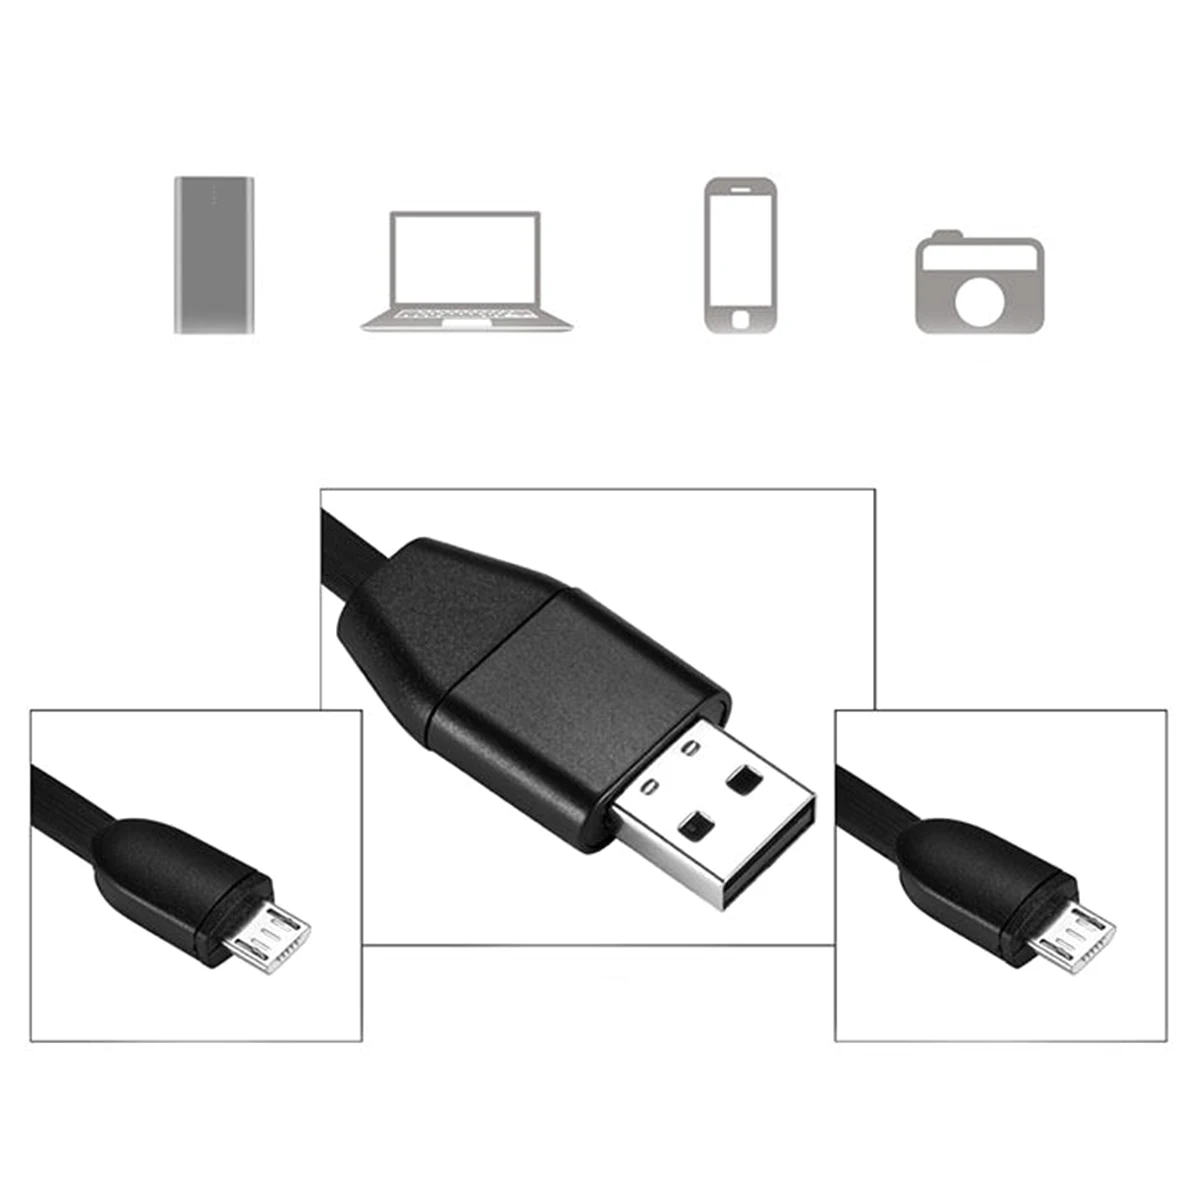 GSM SIM беспроводной скрытый USB кабель дизайн Аудио Звук голосовое Прослушивание ошибка для Android